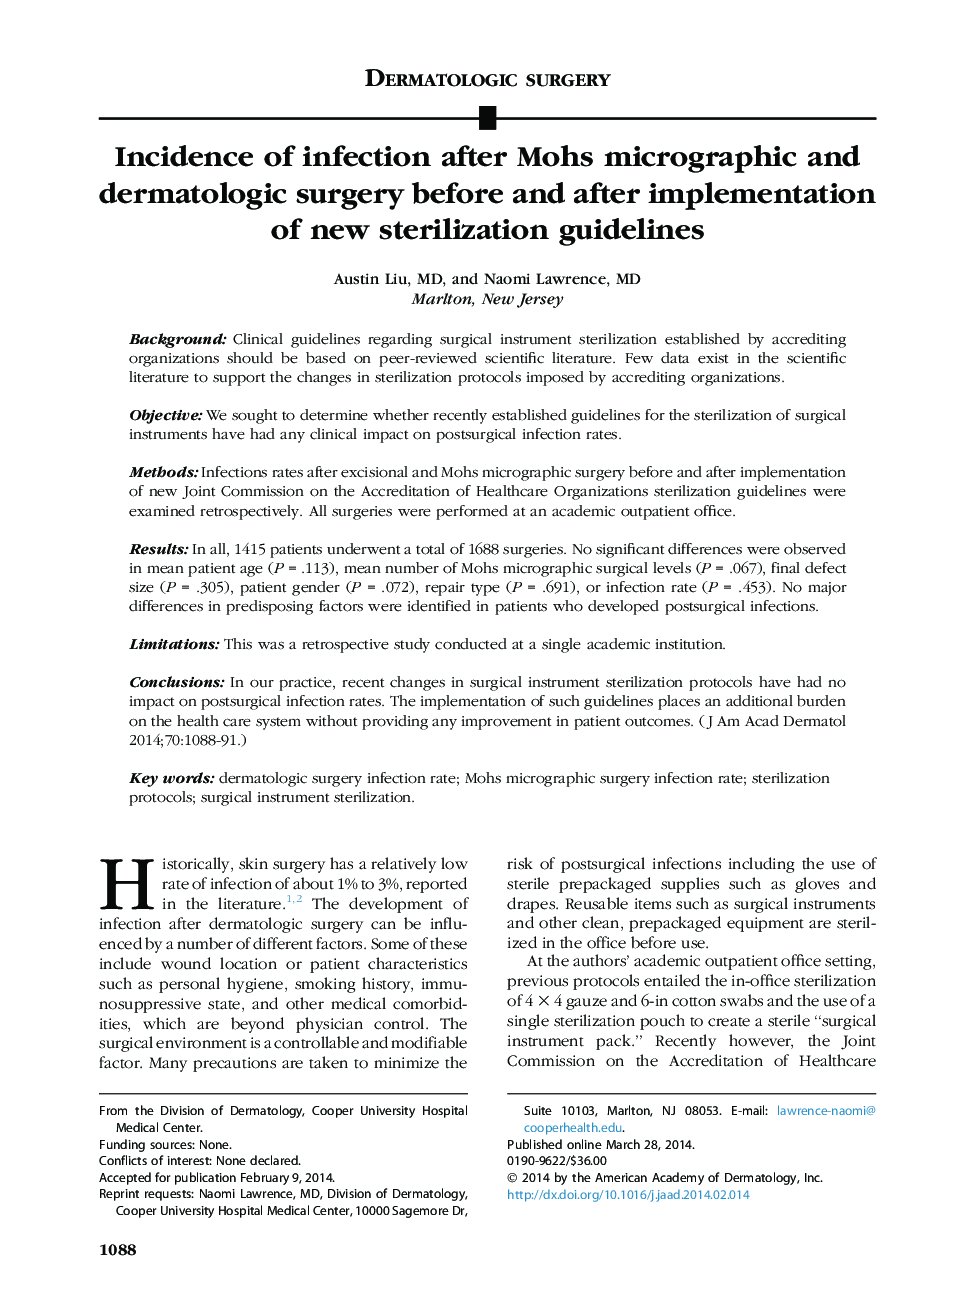 جراحی پوست جراحی عفونت پس از عمل جراحی میکروگرافی و پوست مصنوعی قبل و بعد از اجرای دستورالعمل های استریلیزه جدید 